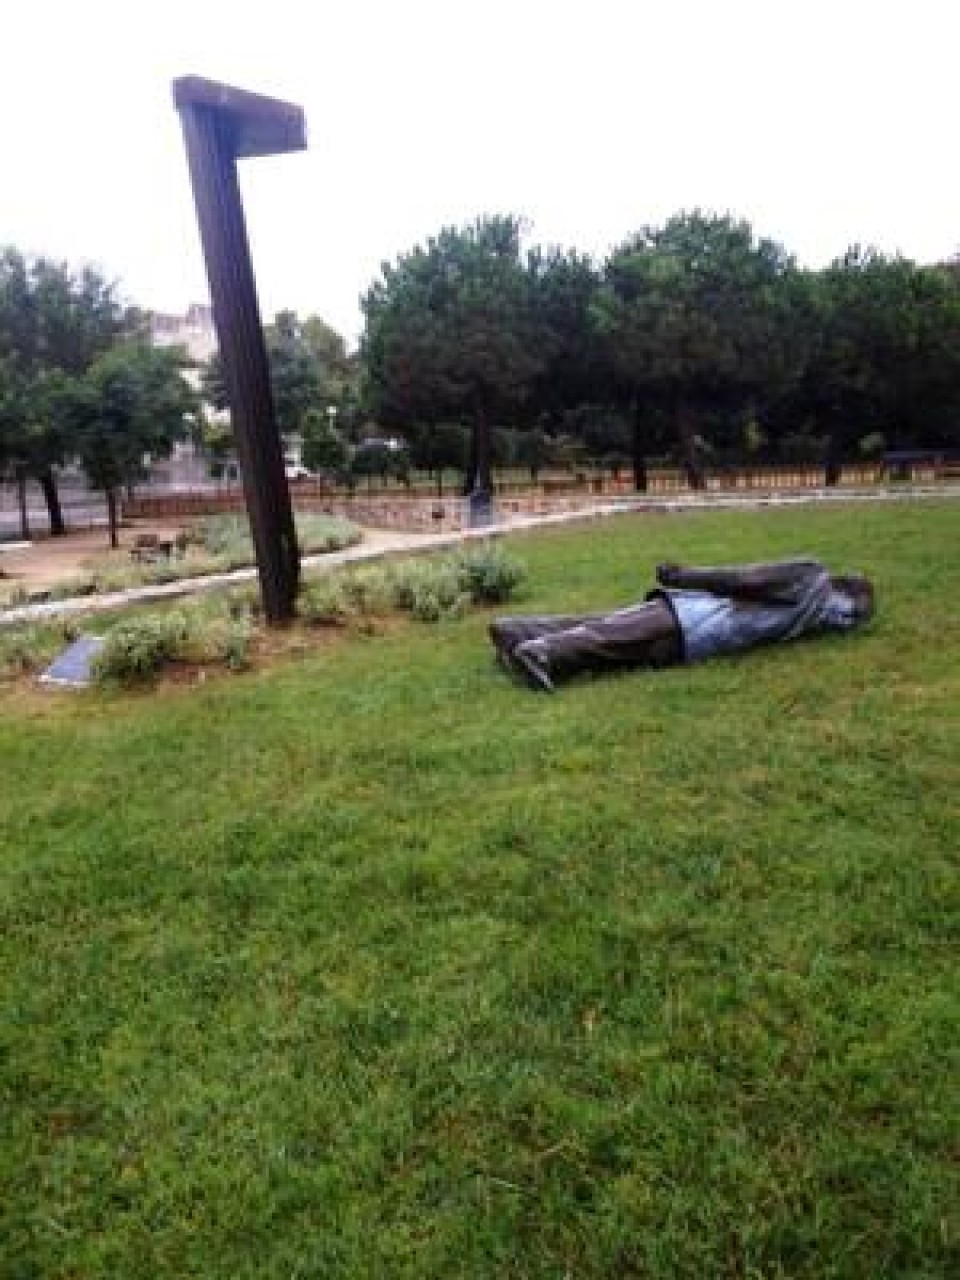 Derriban la estatua de Jordi Pujol, tras sufrir un acto vandálico